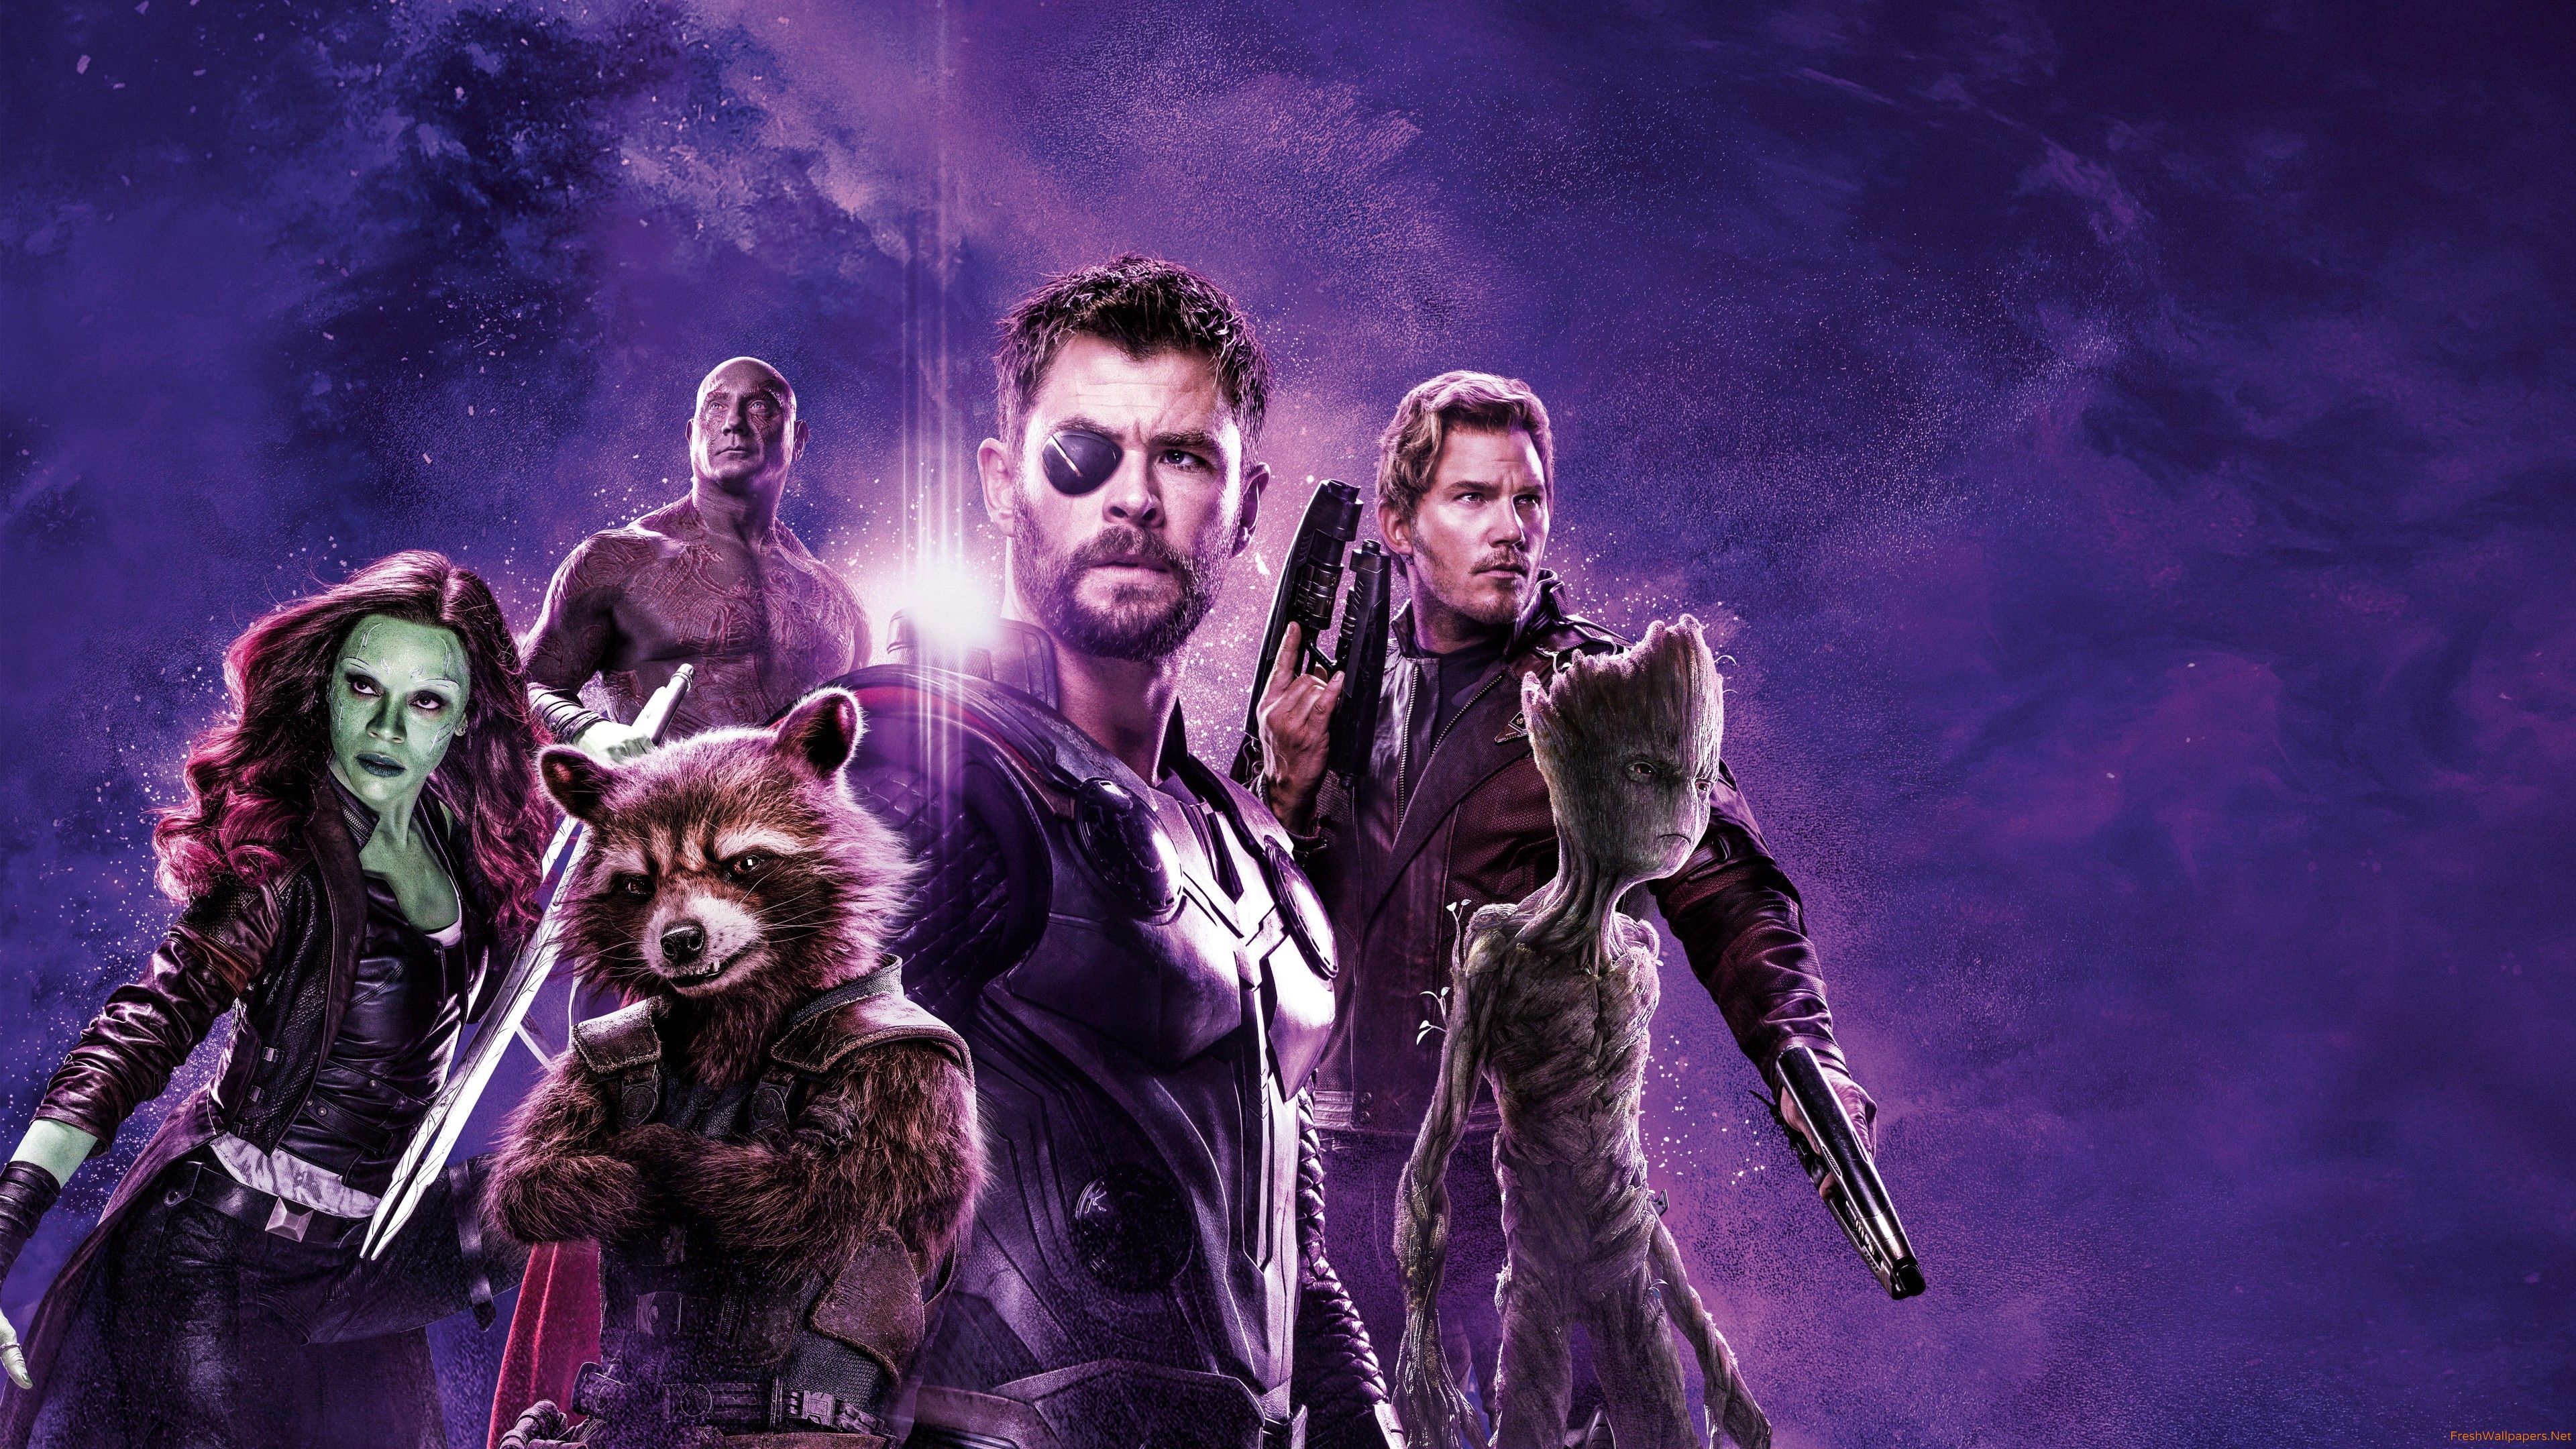 Avengers Endgame Wallpaper For PC